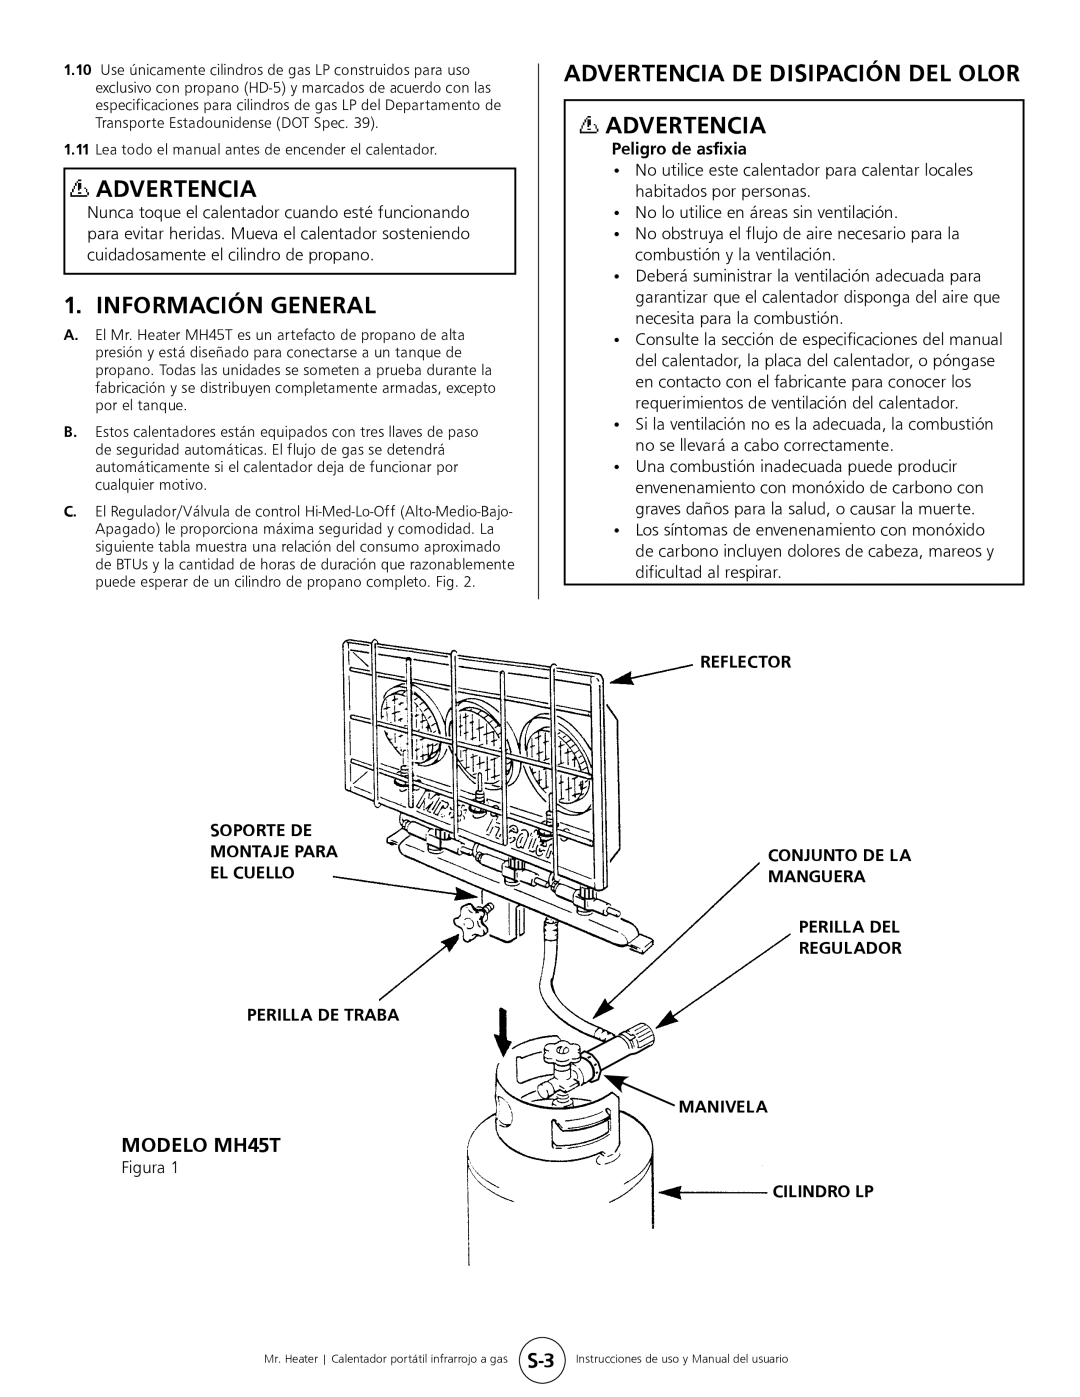 Mr. Heater Información General, Advertencia De Disipación Del Olor Advertencia, MODELO MH45T, Perilla De Traba 